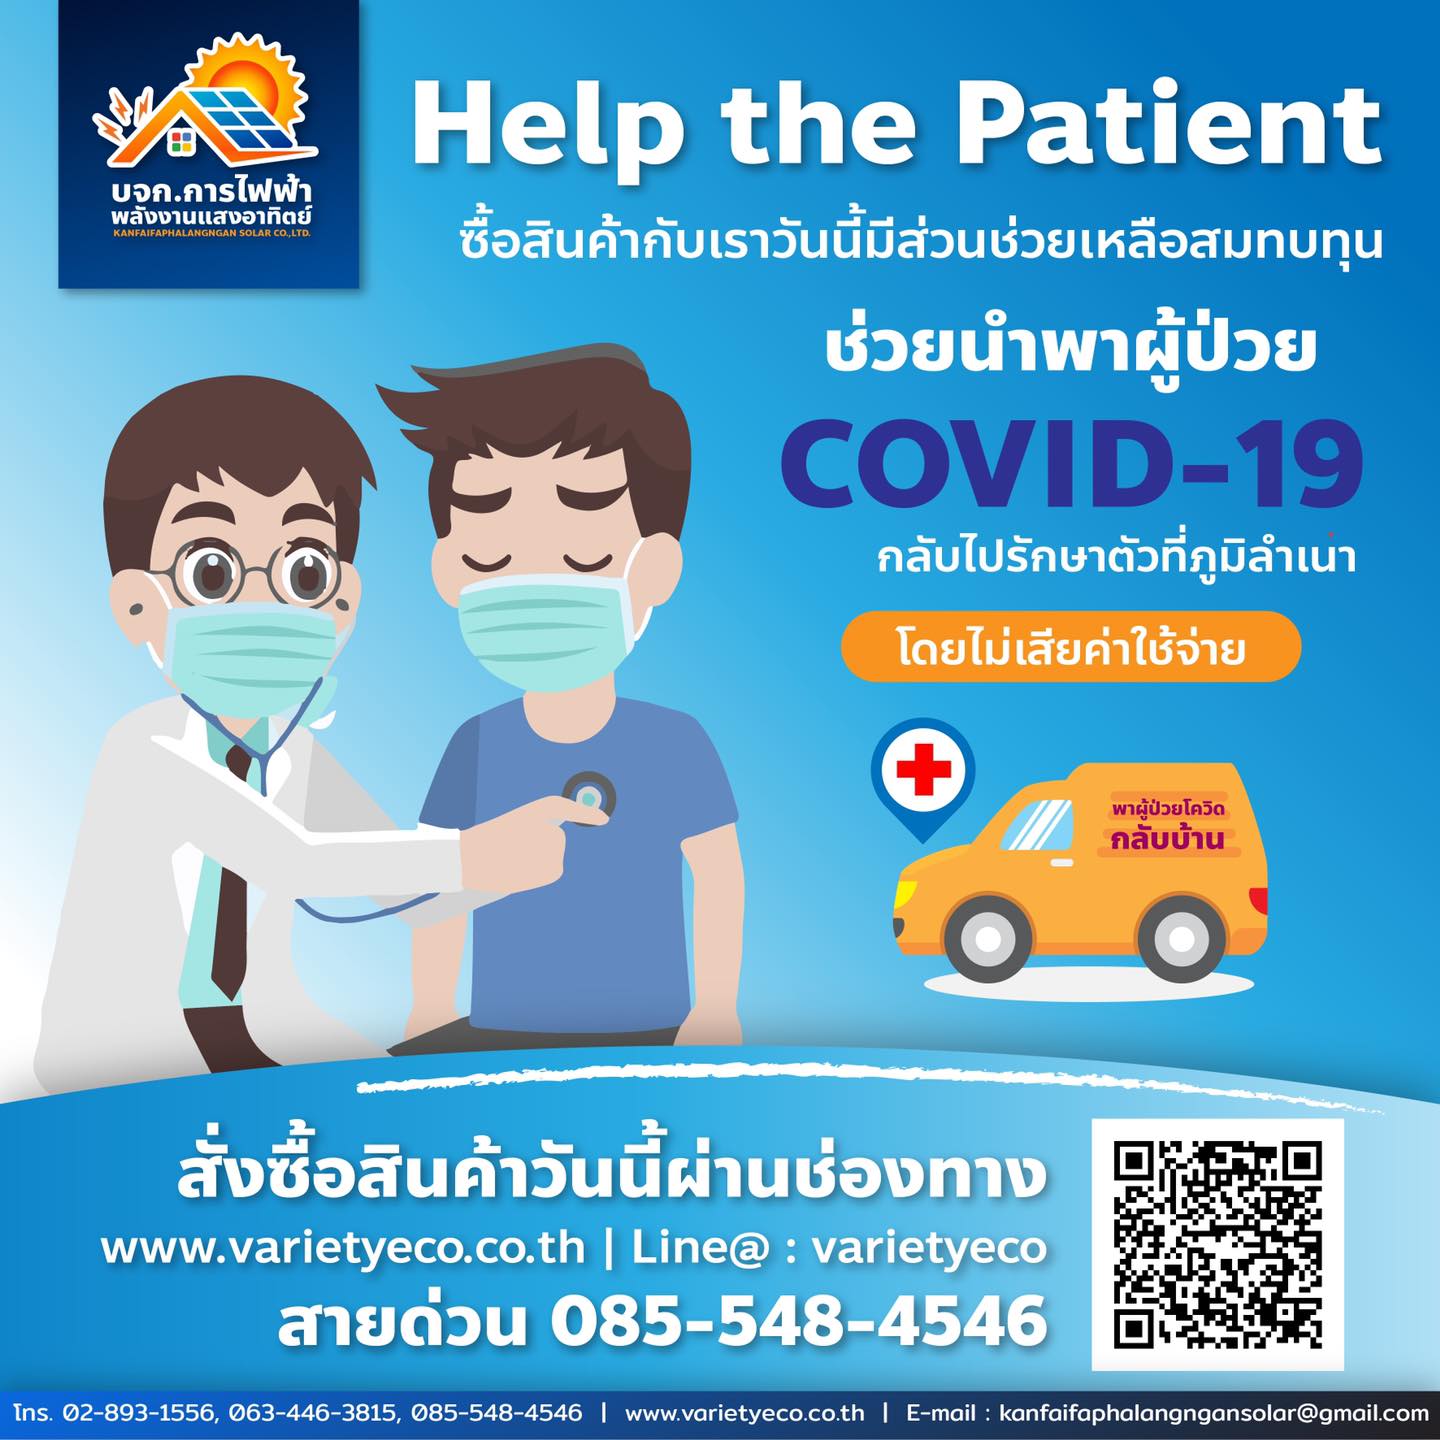 ช่วยนำพาผู้ป่วย COVID-19